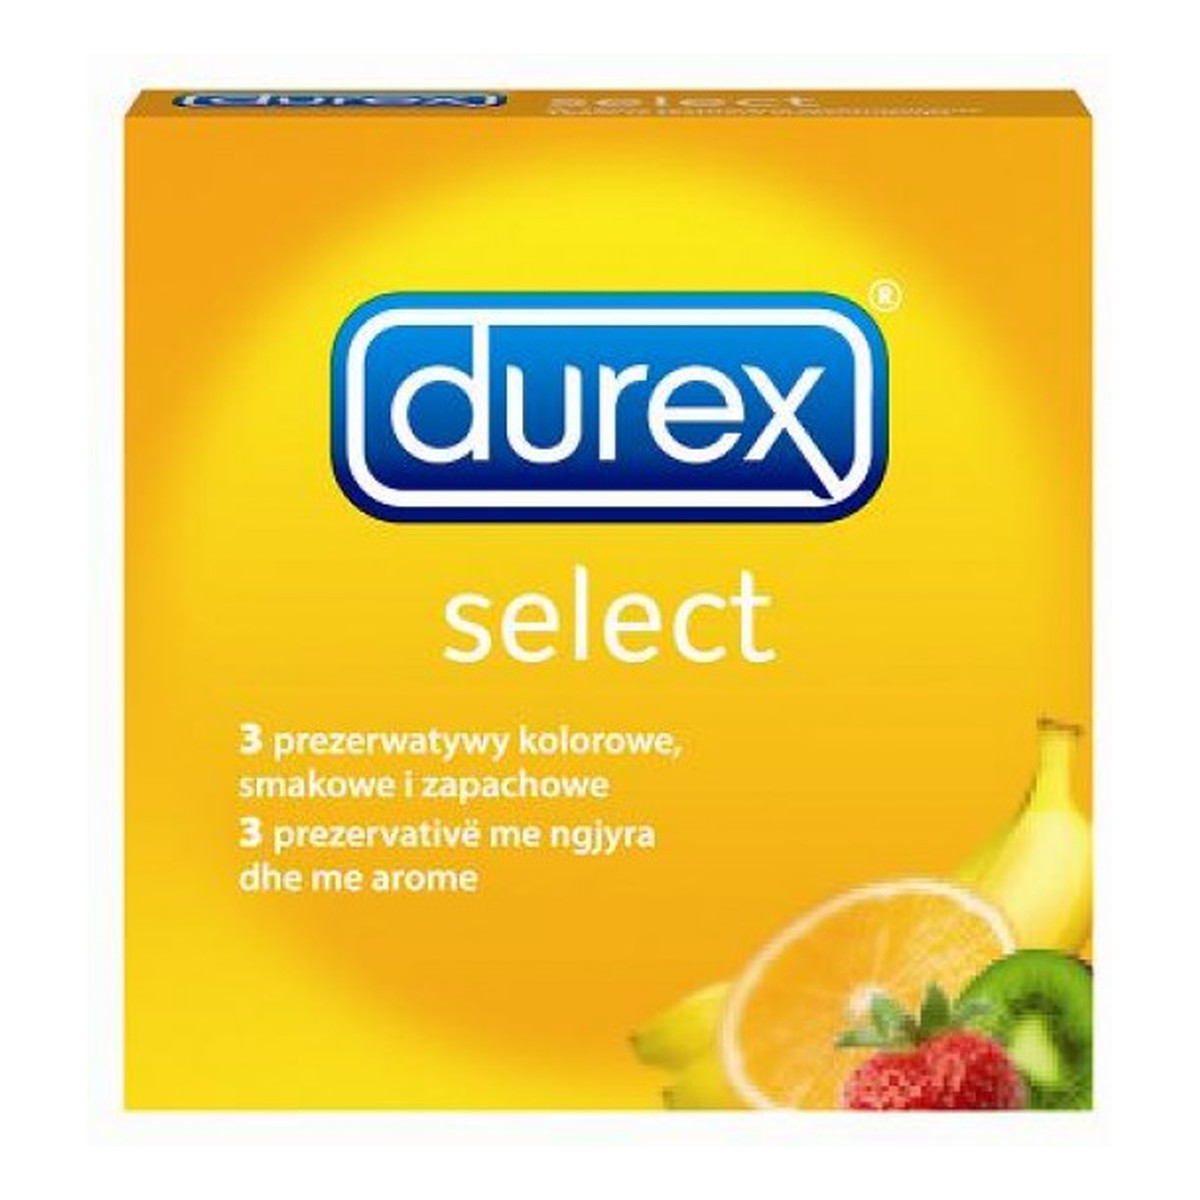 Durex Select Prezerwatywy Zapachowe 3szt.